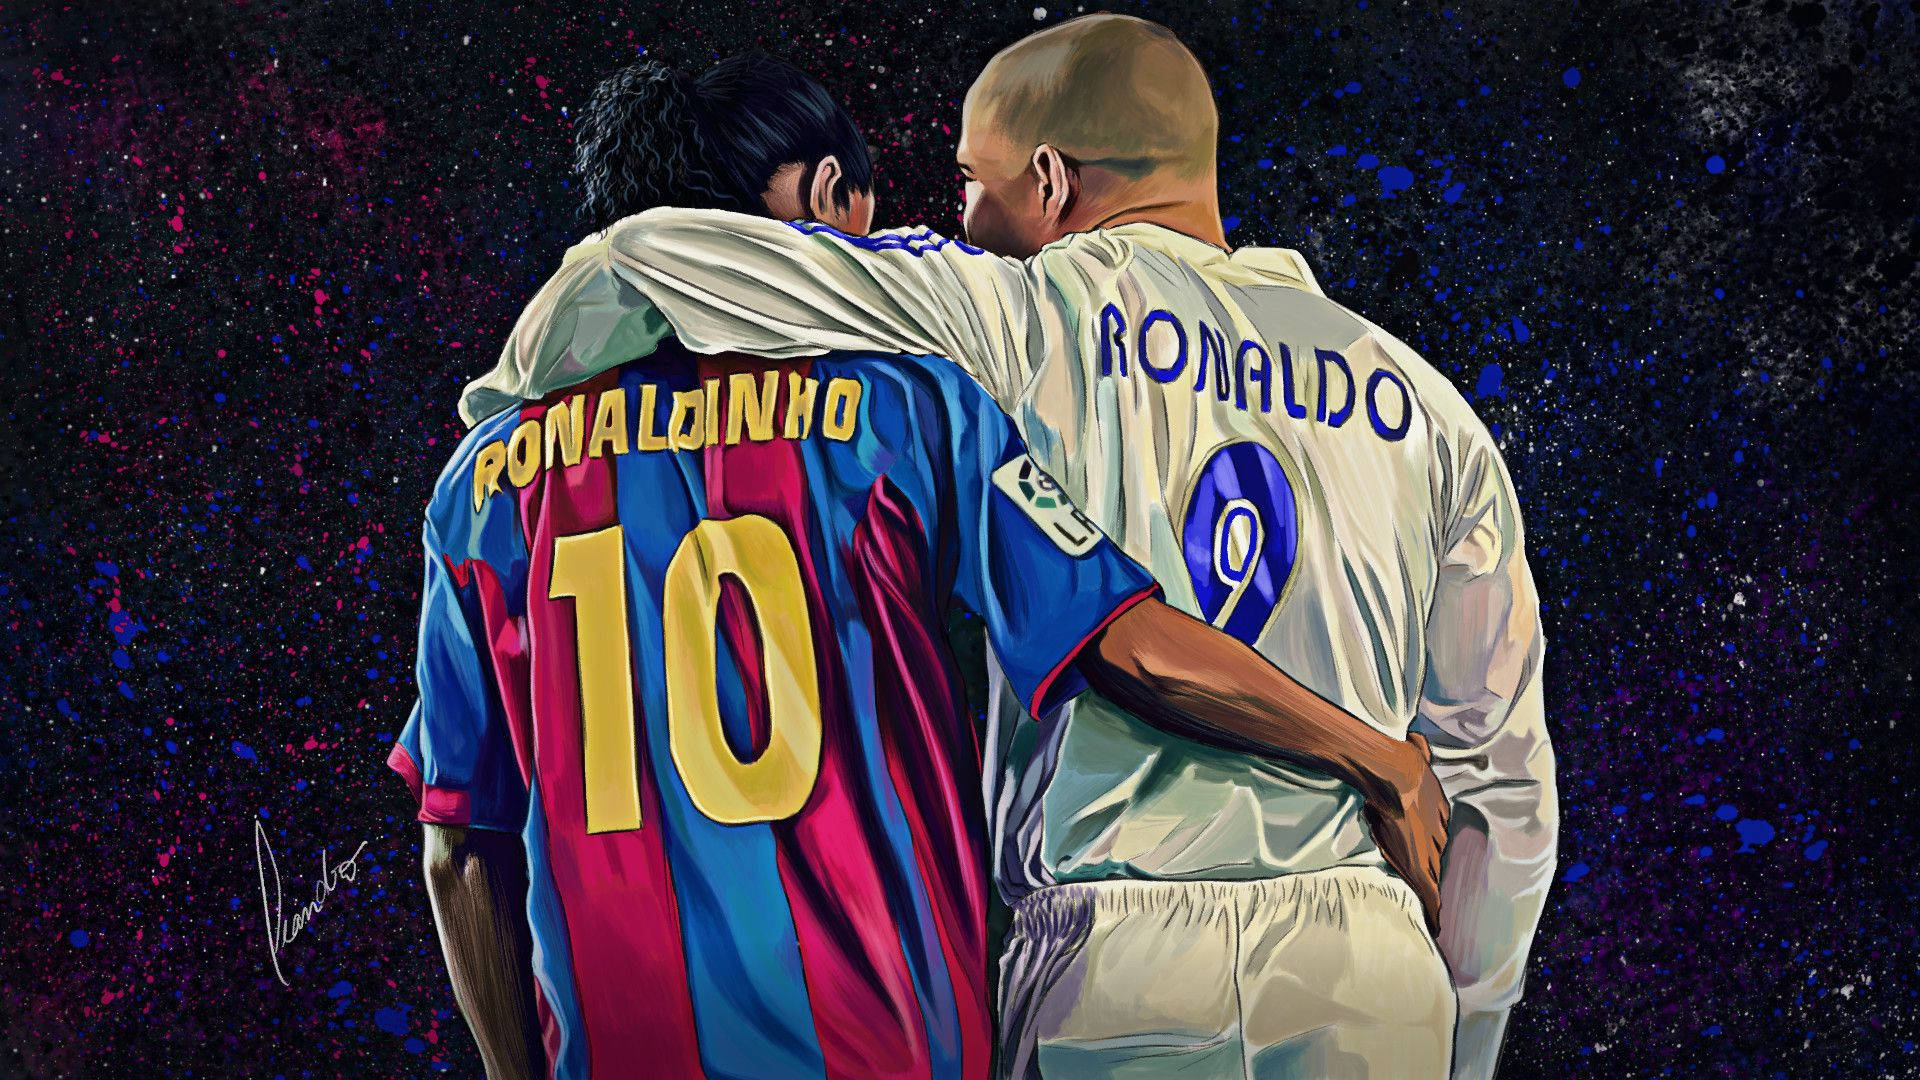 Ronaldo and Ronaldinho Wallpaper